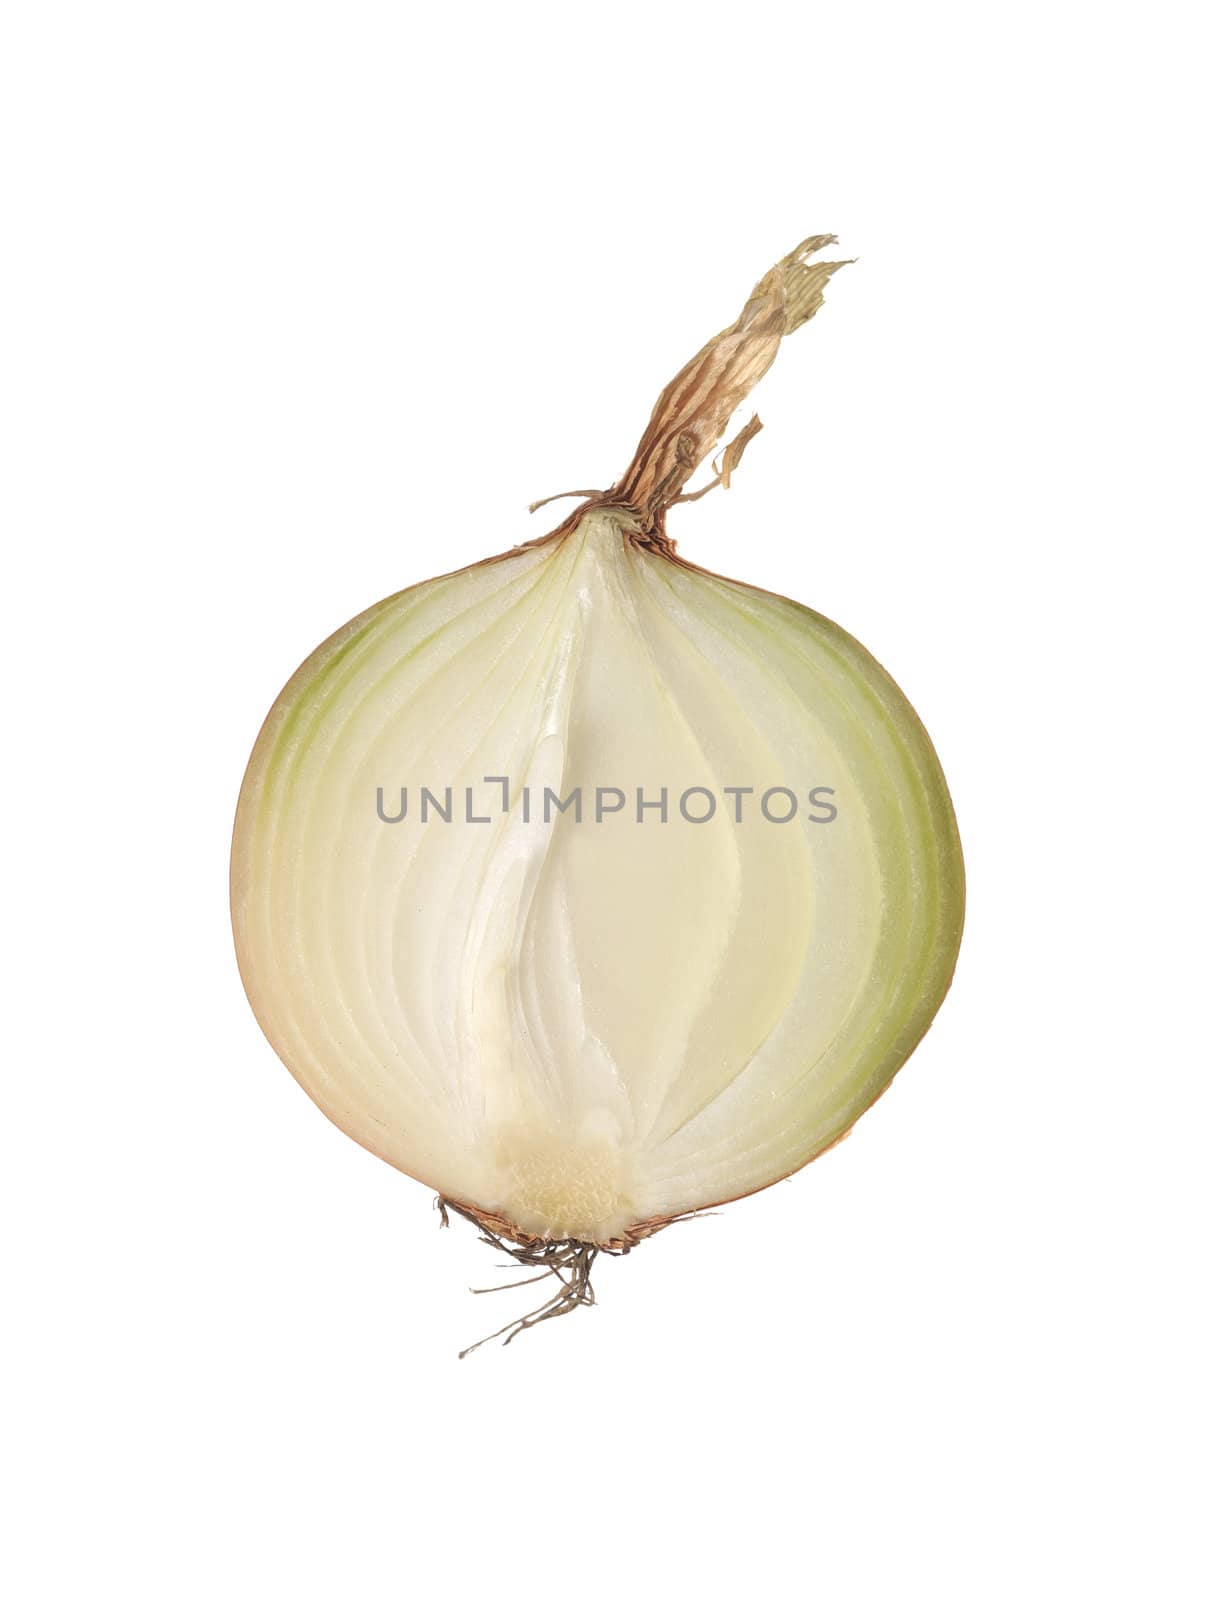 Onion by gemenacom